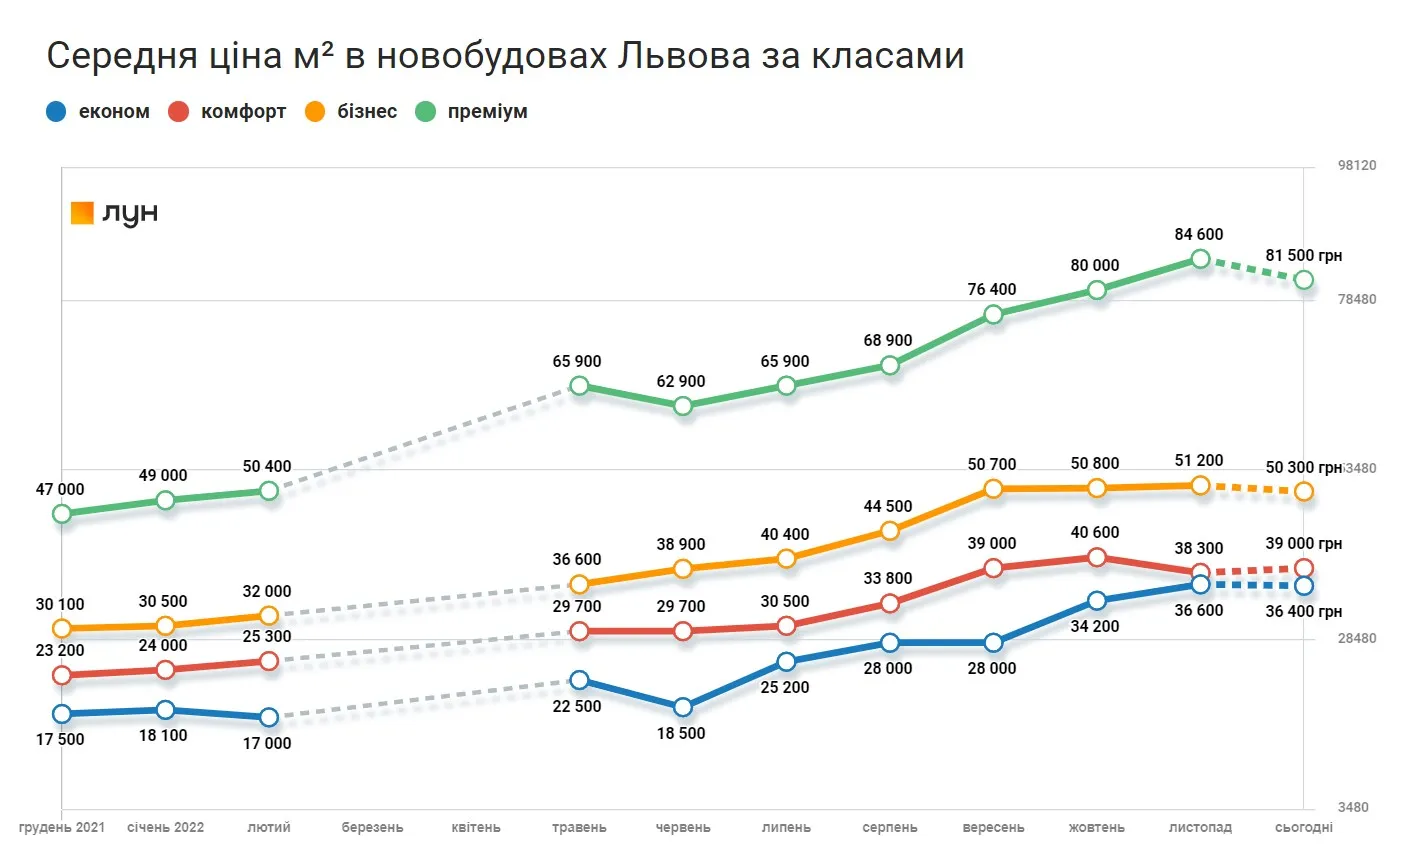 ​Как изменялись цены на жилье во Львове - данные ЛУН